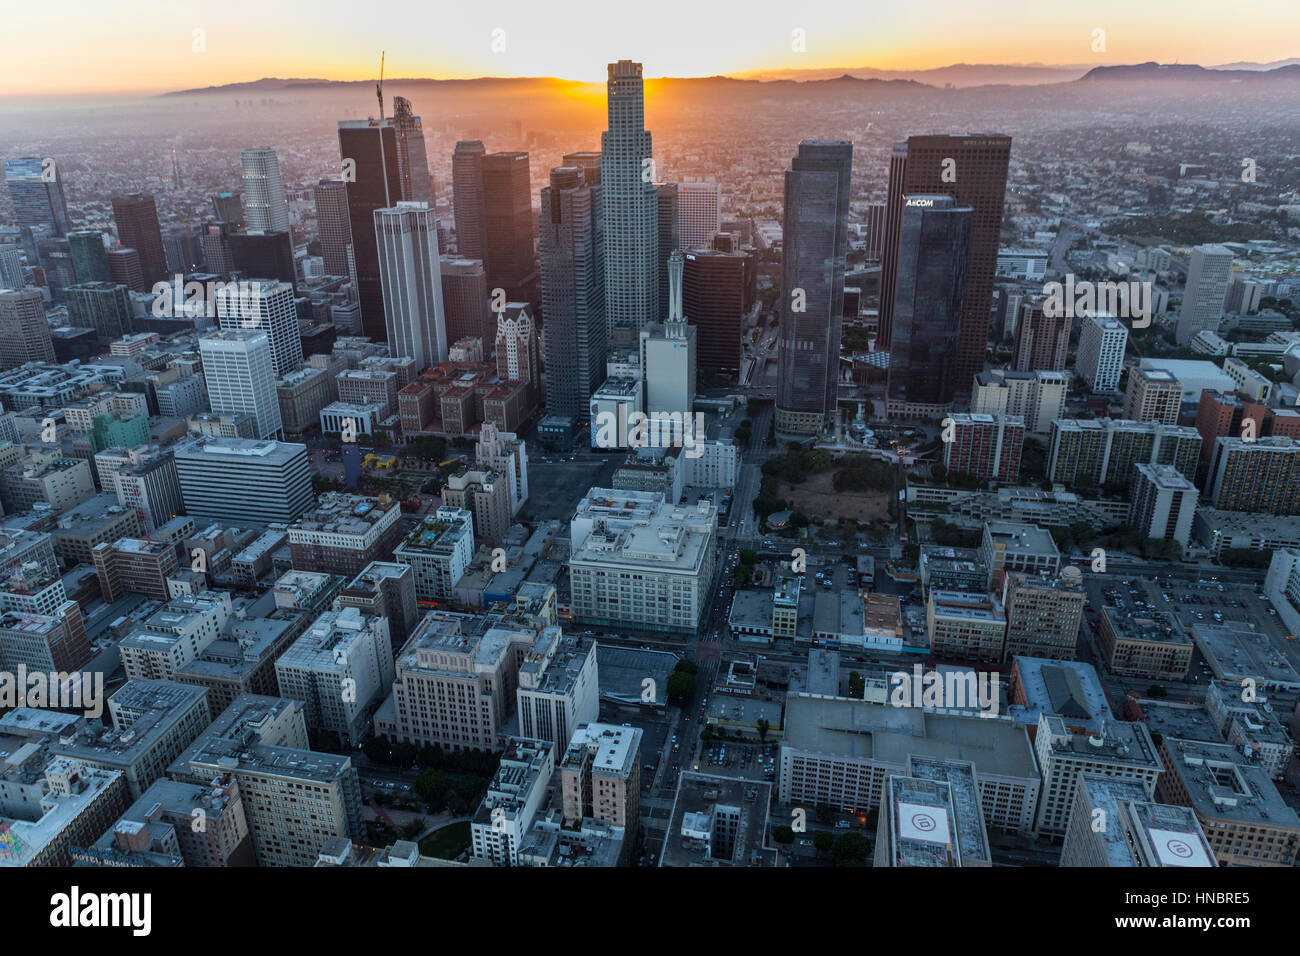 Los Angeles, California, Stati Uniti d'America - 21 Luglio 2016: antenna urbano del sole che tramonta dietro la US Bank Tower nel centro di Los Angeles. Foto Stock